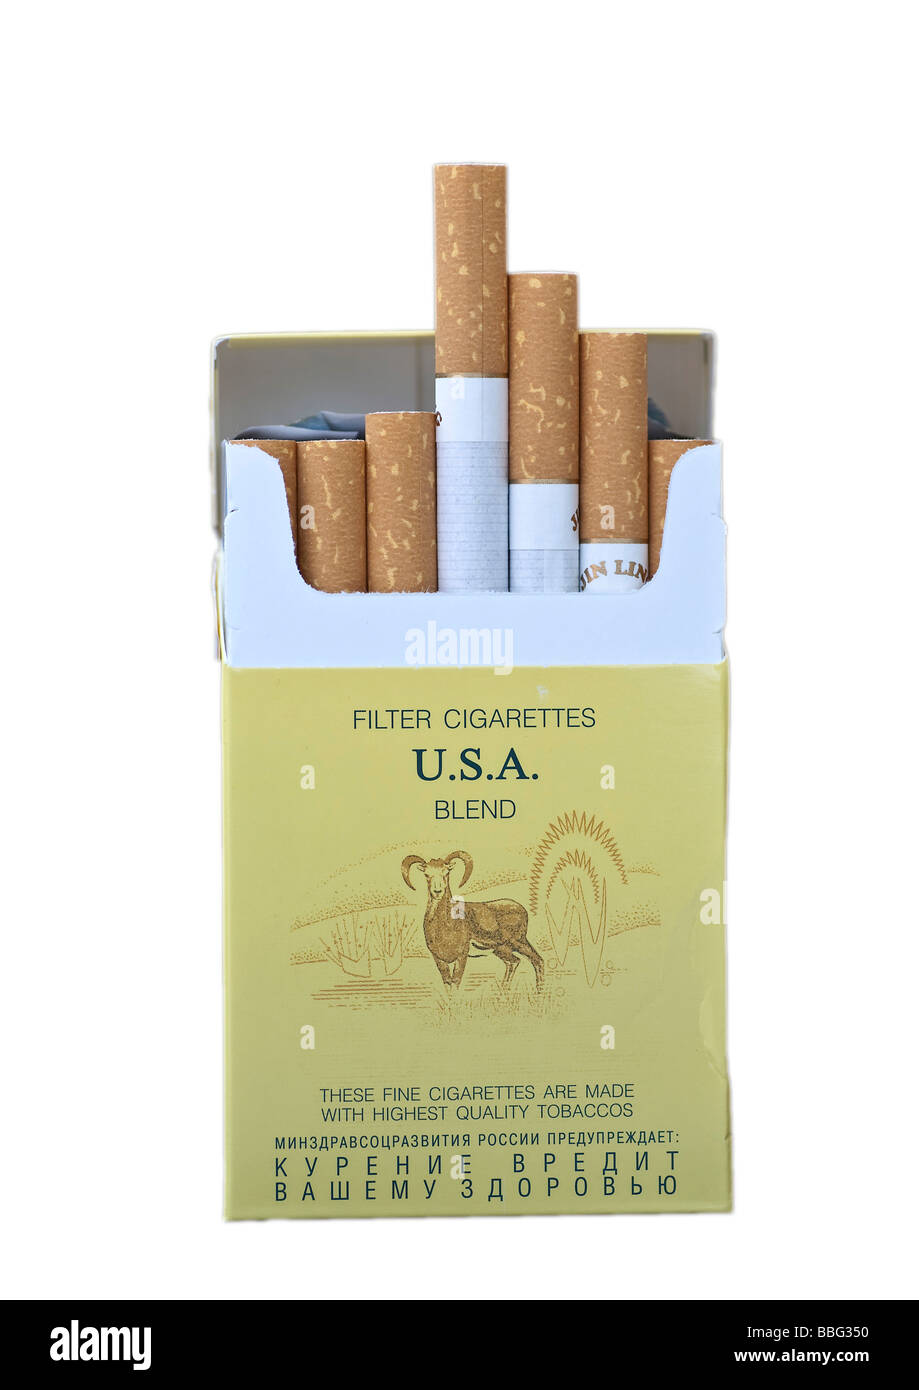 Un paquet de cigarettes, Jin Ling, marque de cigarettes de contrebande le plus souvent de la Russie à l'Allemagne Banque D'Images